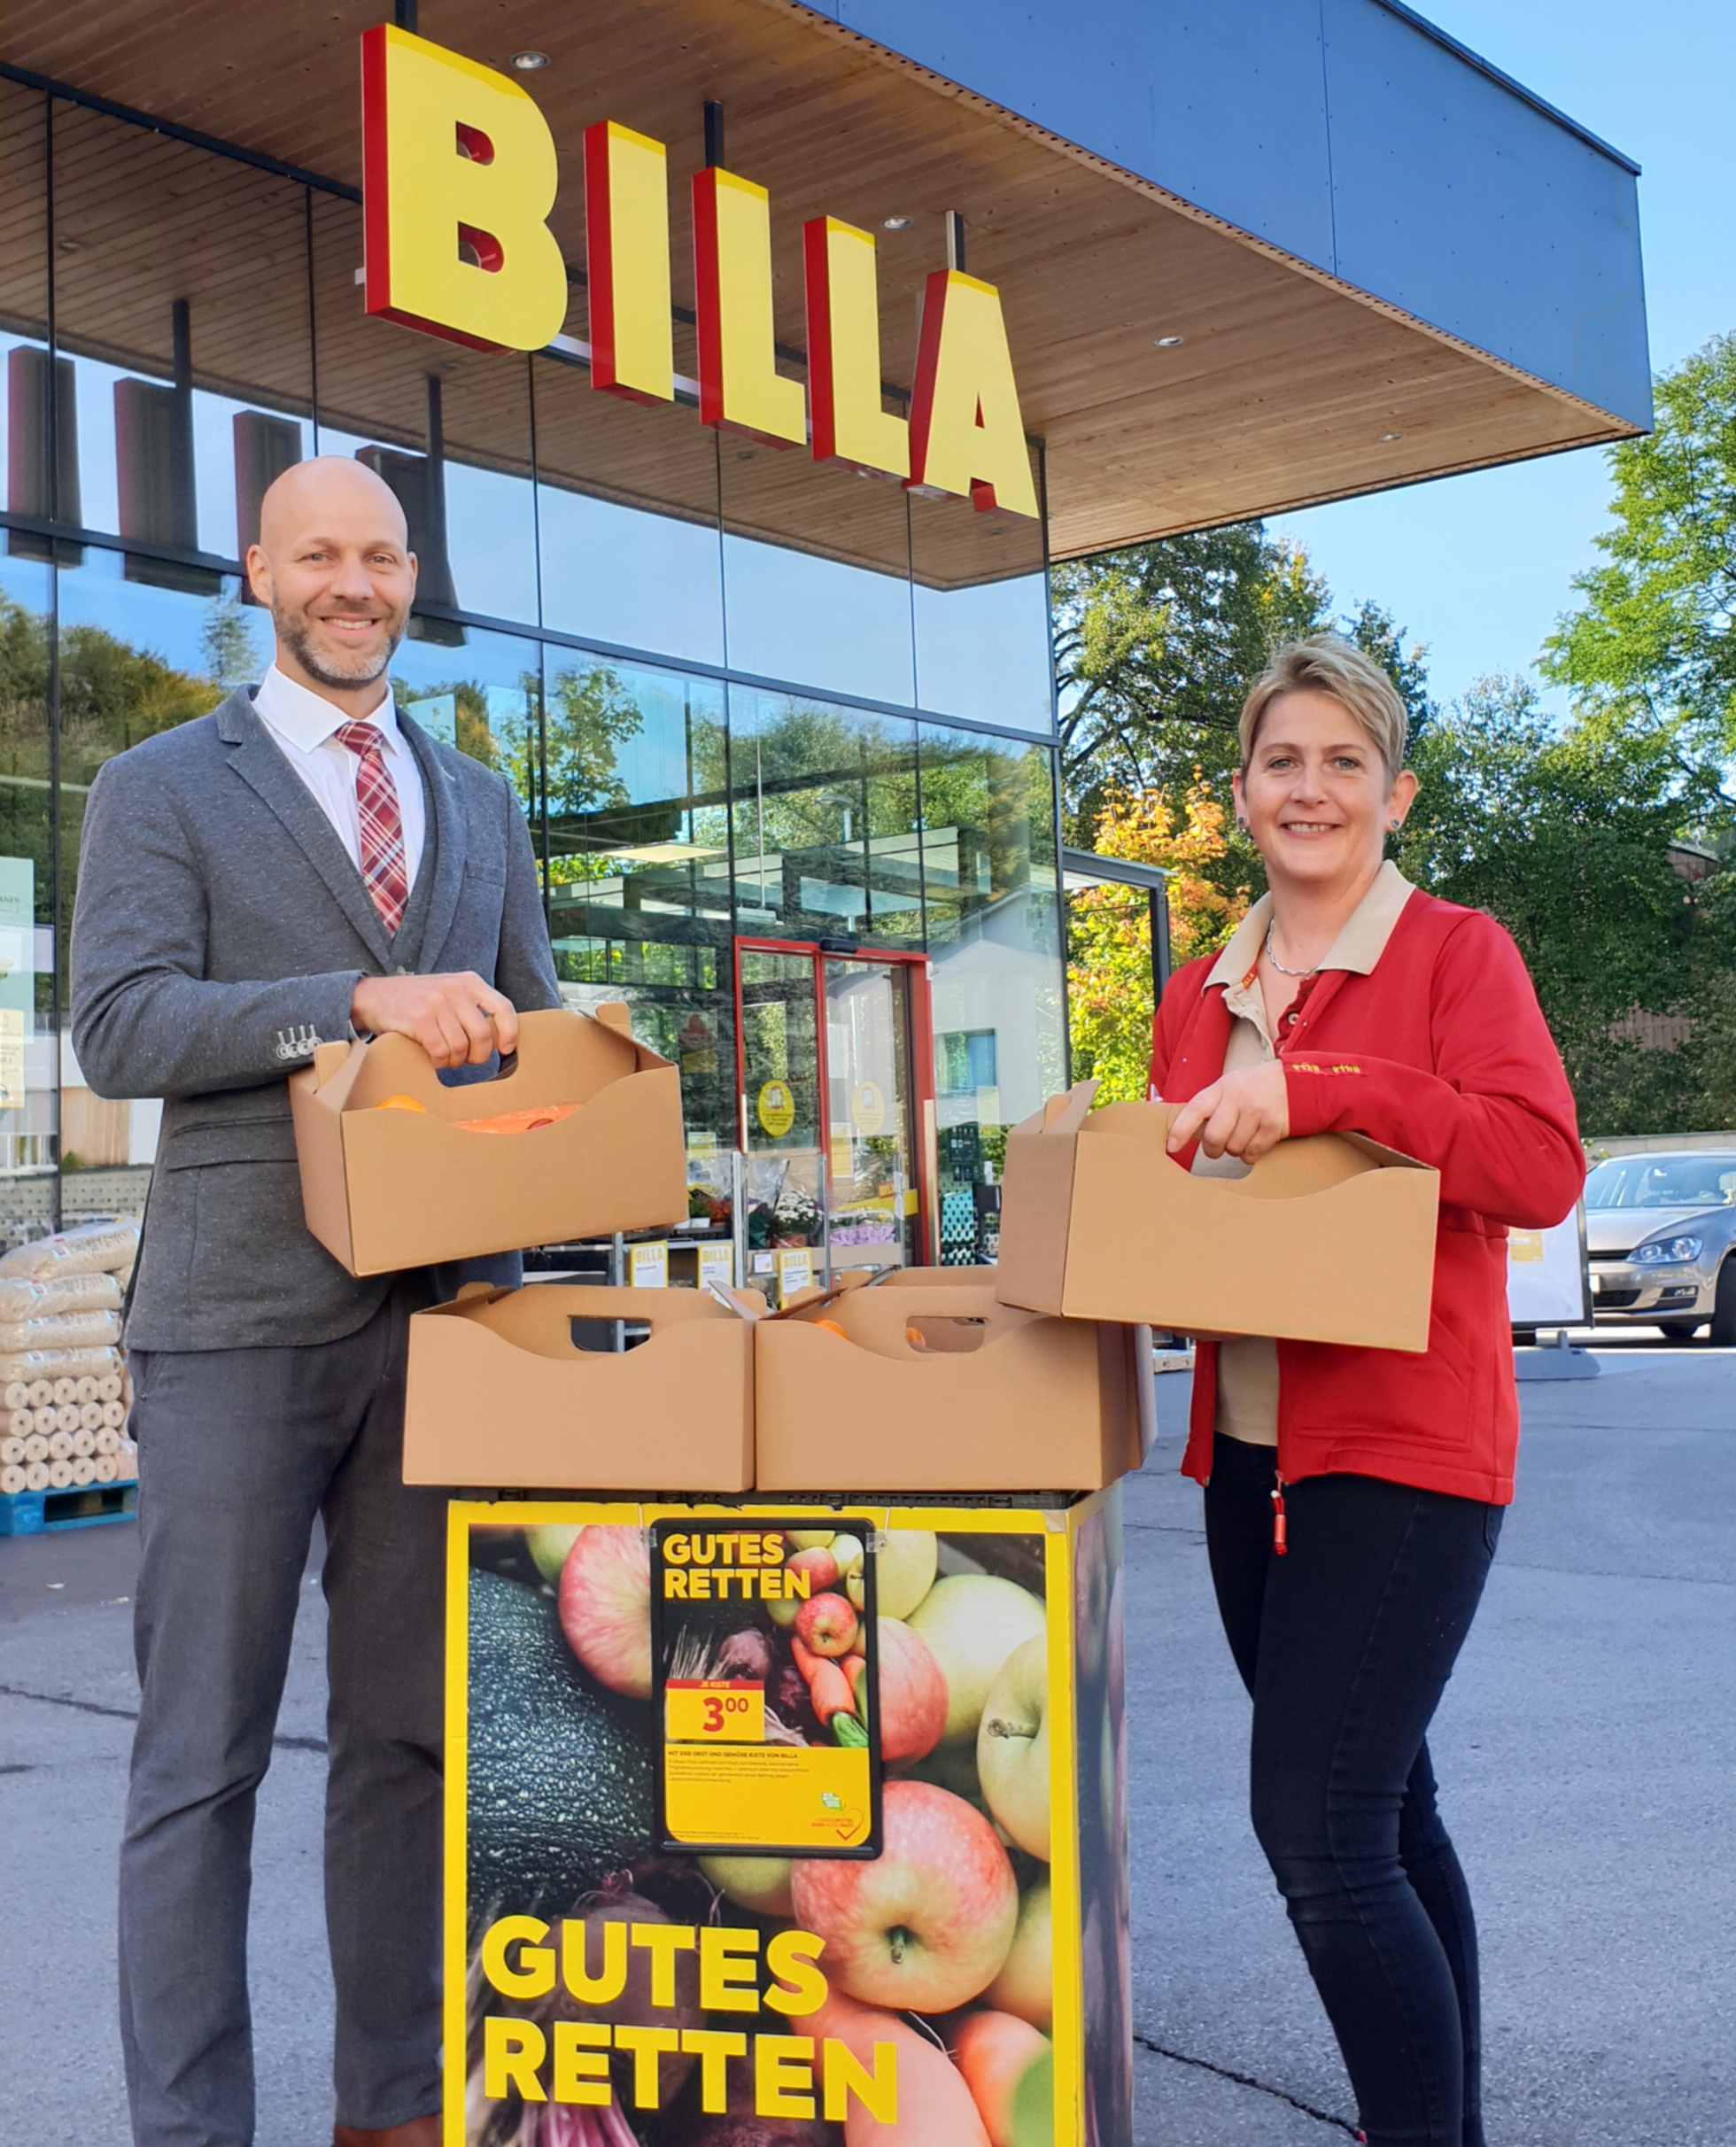 v.l.: BILLA Vertriebsdirektor Peter Gschiel und BILLA Marktmanagerin in Graz-Mariatroster Straße 142 Elisabeth Heigl mit den Obst- & Gemüse-Kisterl.